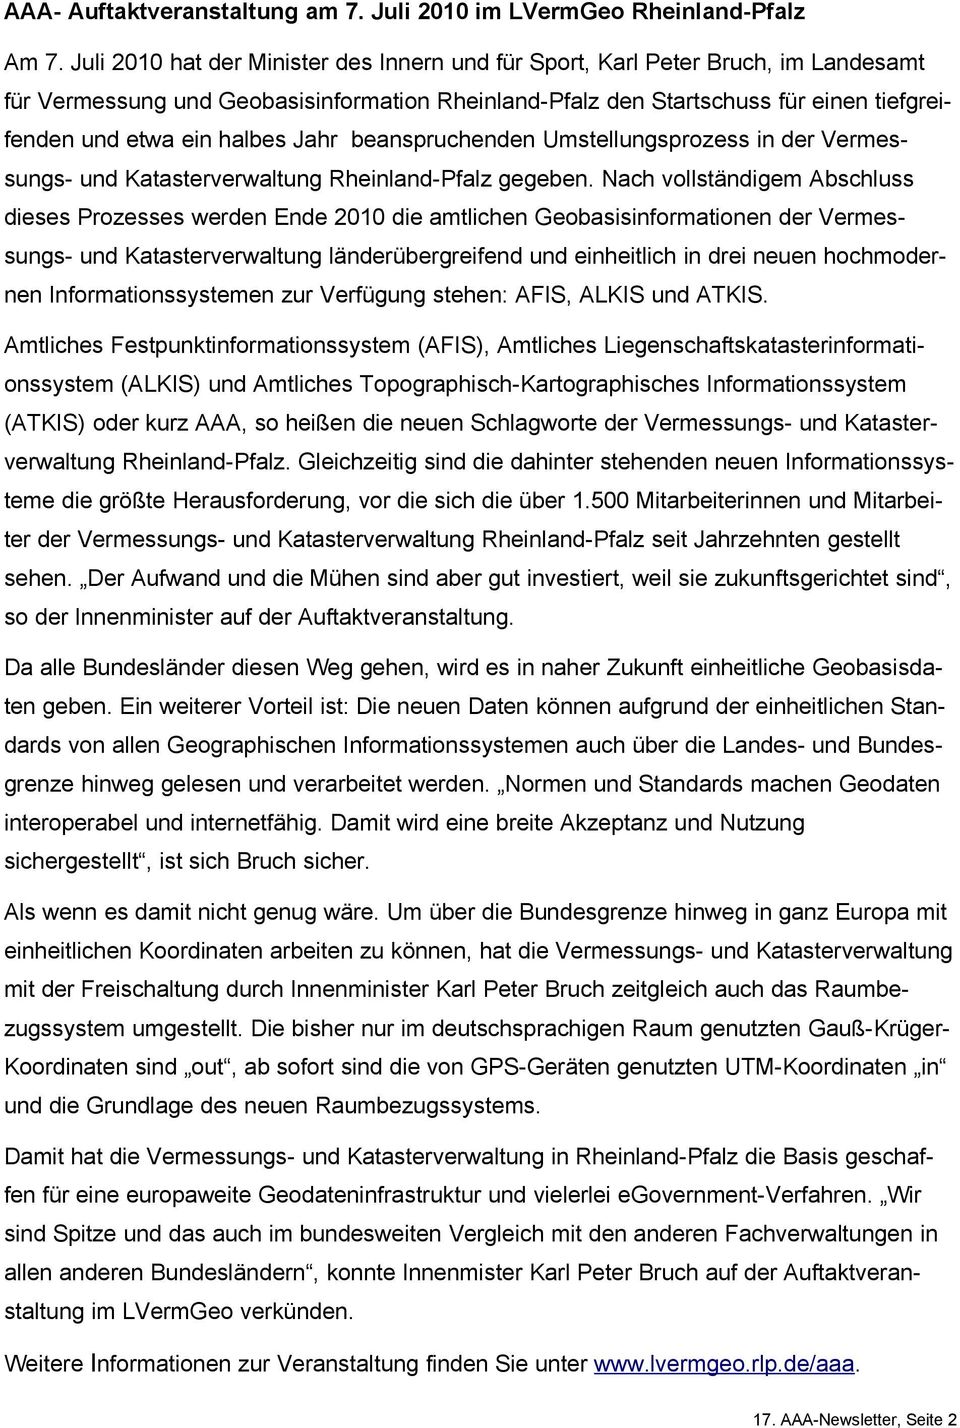 Jahr beanspruchenden Umstellungsprozess in der Vermessungs- und Katasterverwaltung Rheinland-Pfalz gegeben.